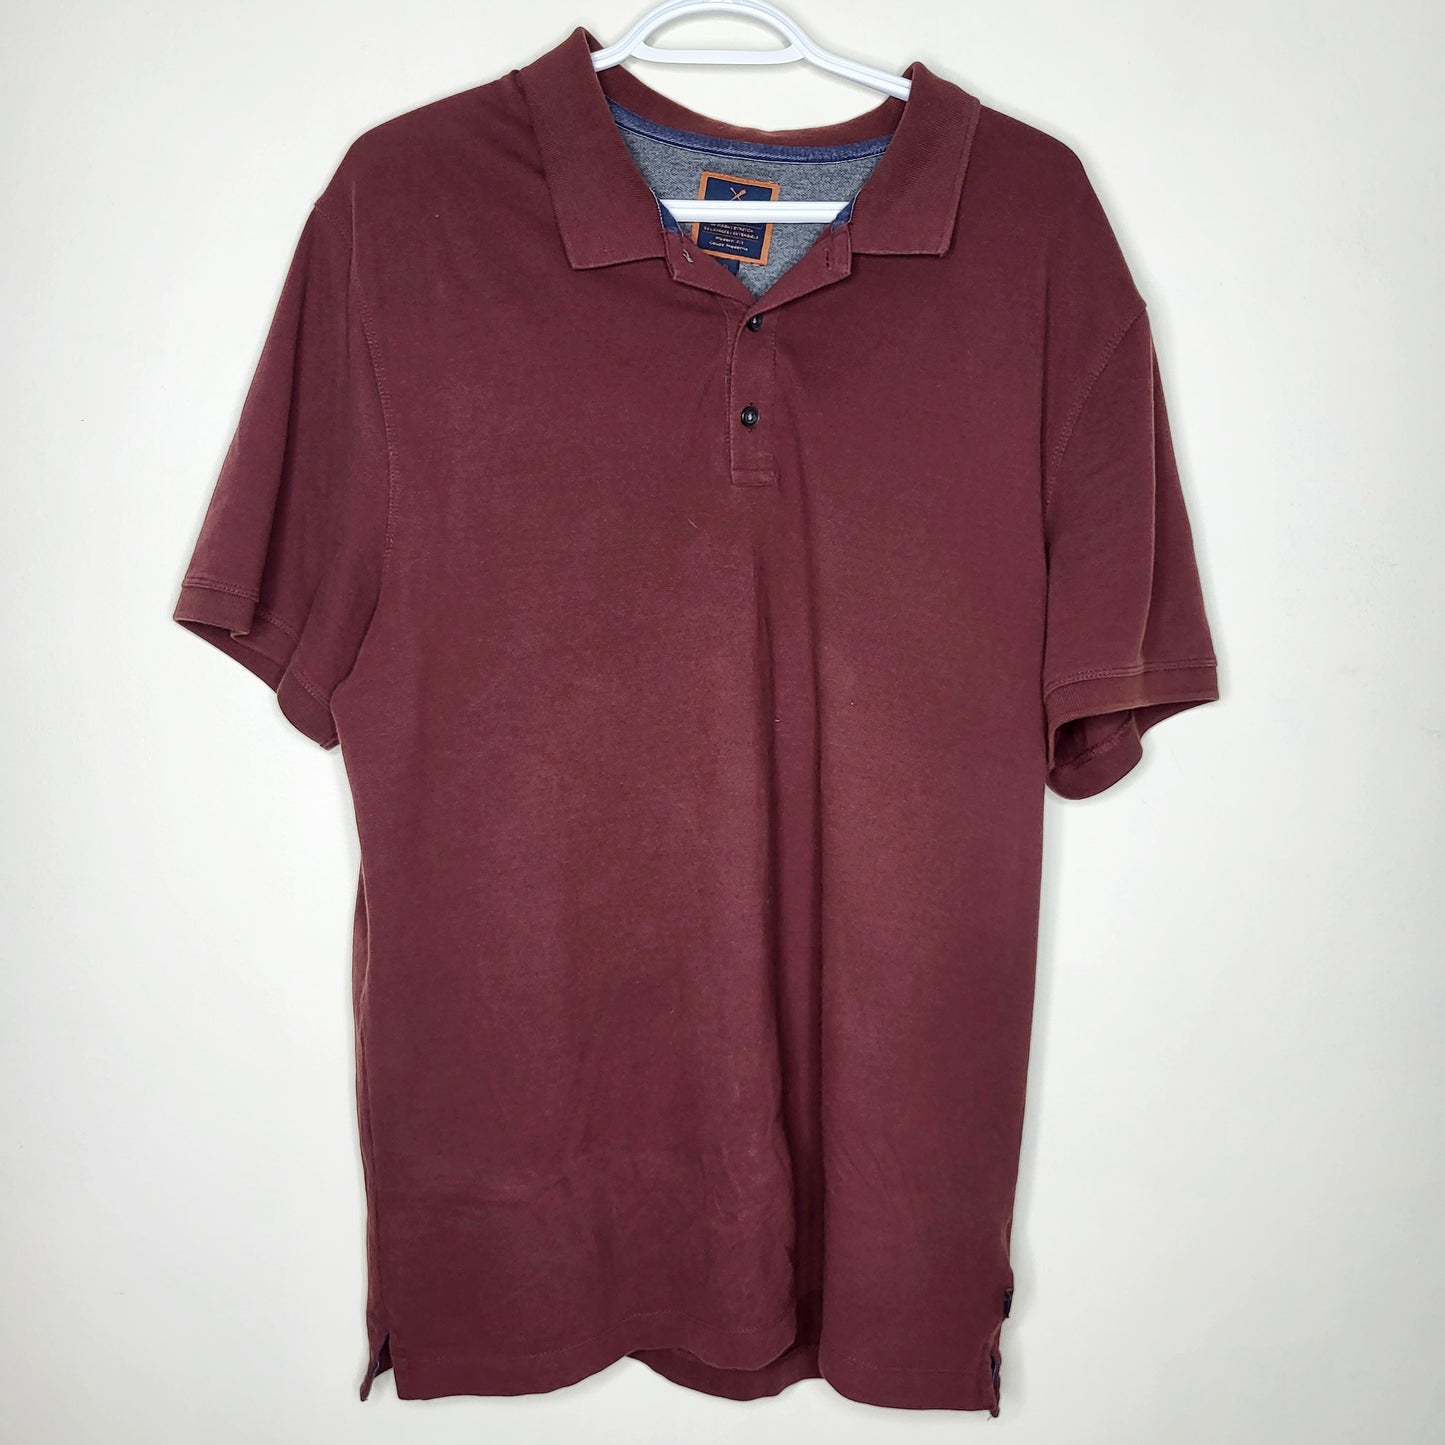 NPXT - Denver Haye's burgundy polo shirt, men's size XL, good condition